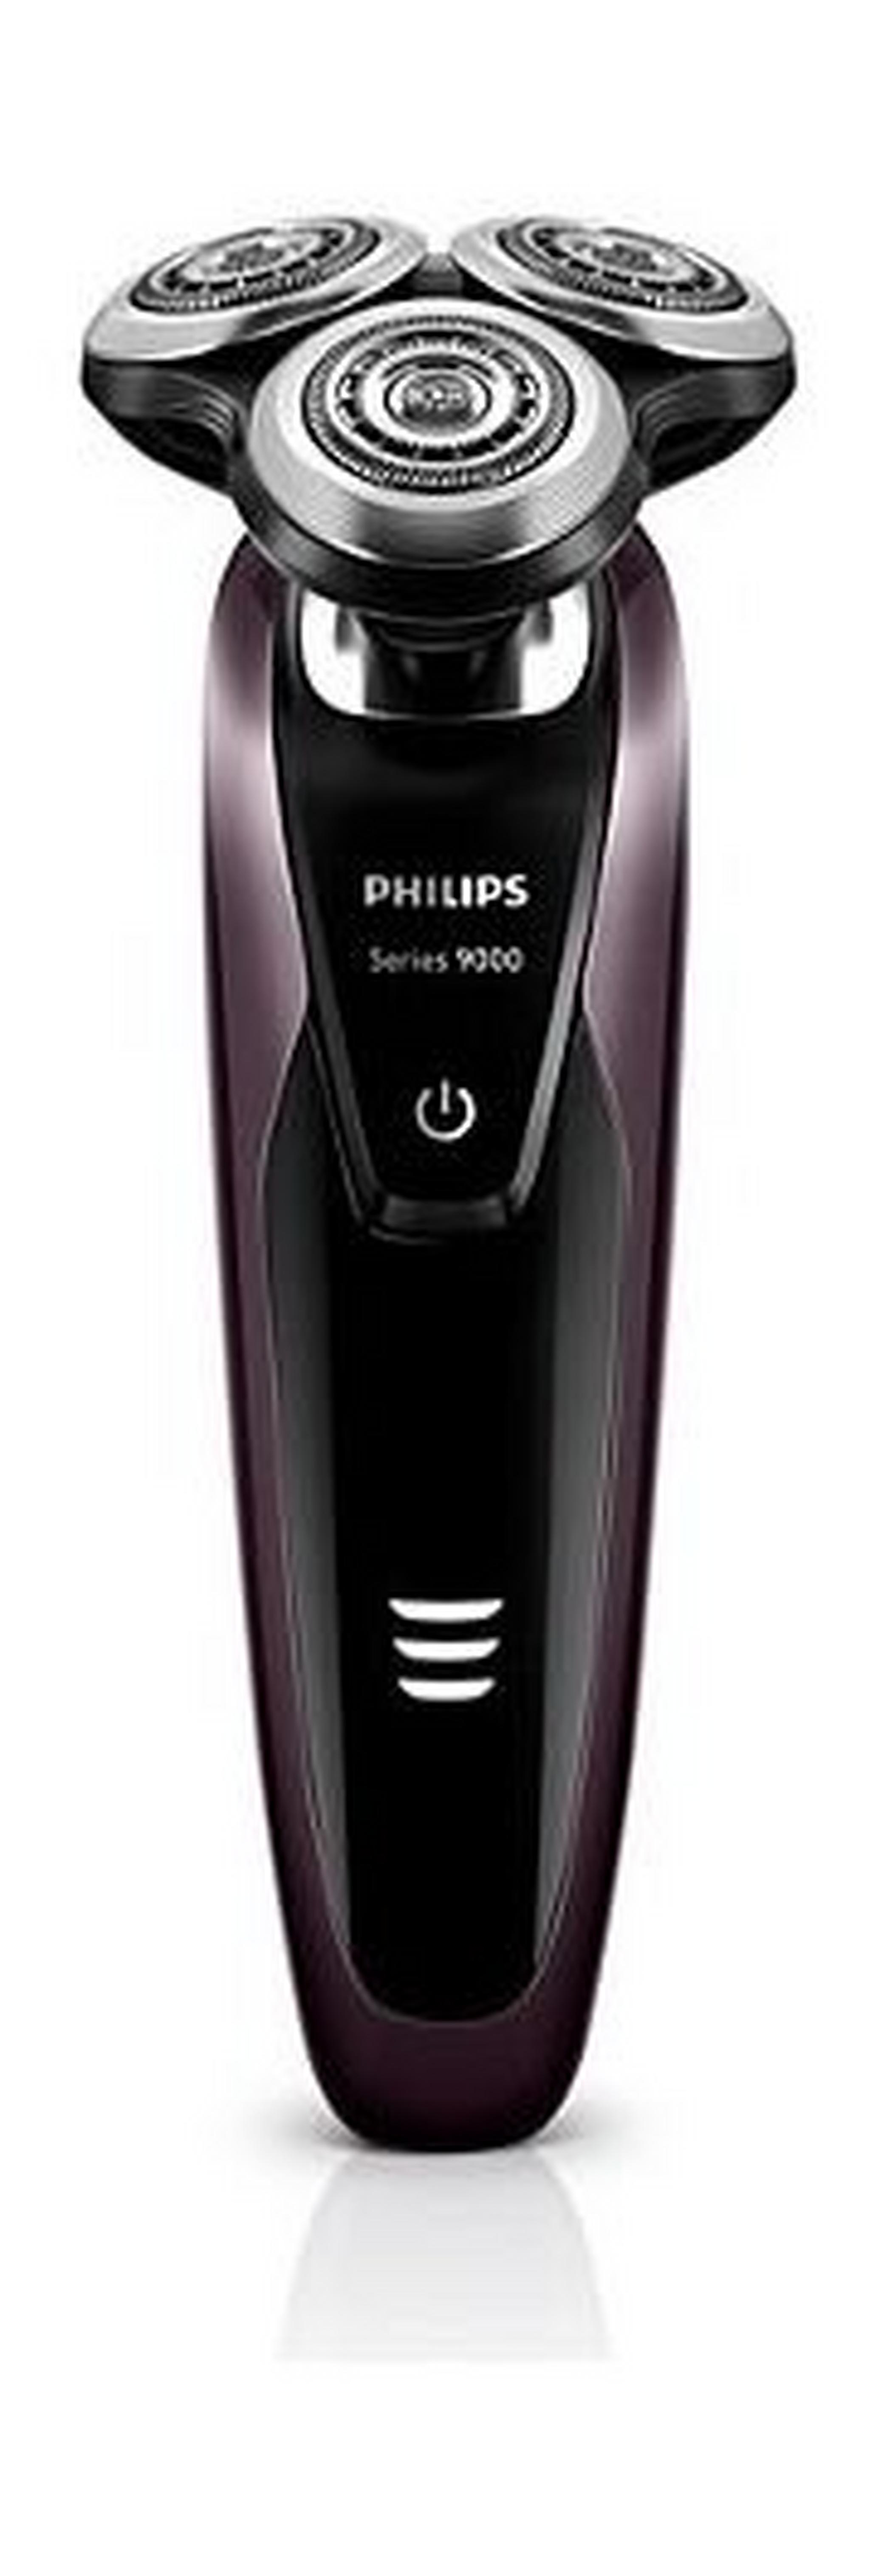 ماكينة حلاقة الشعر الذكية أكواتك من فيليبس ـ أسود/بنفسجي ـ (S9171/23)